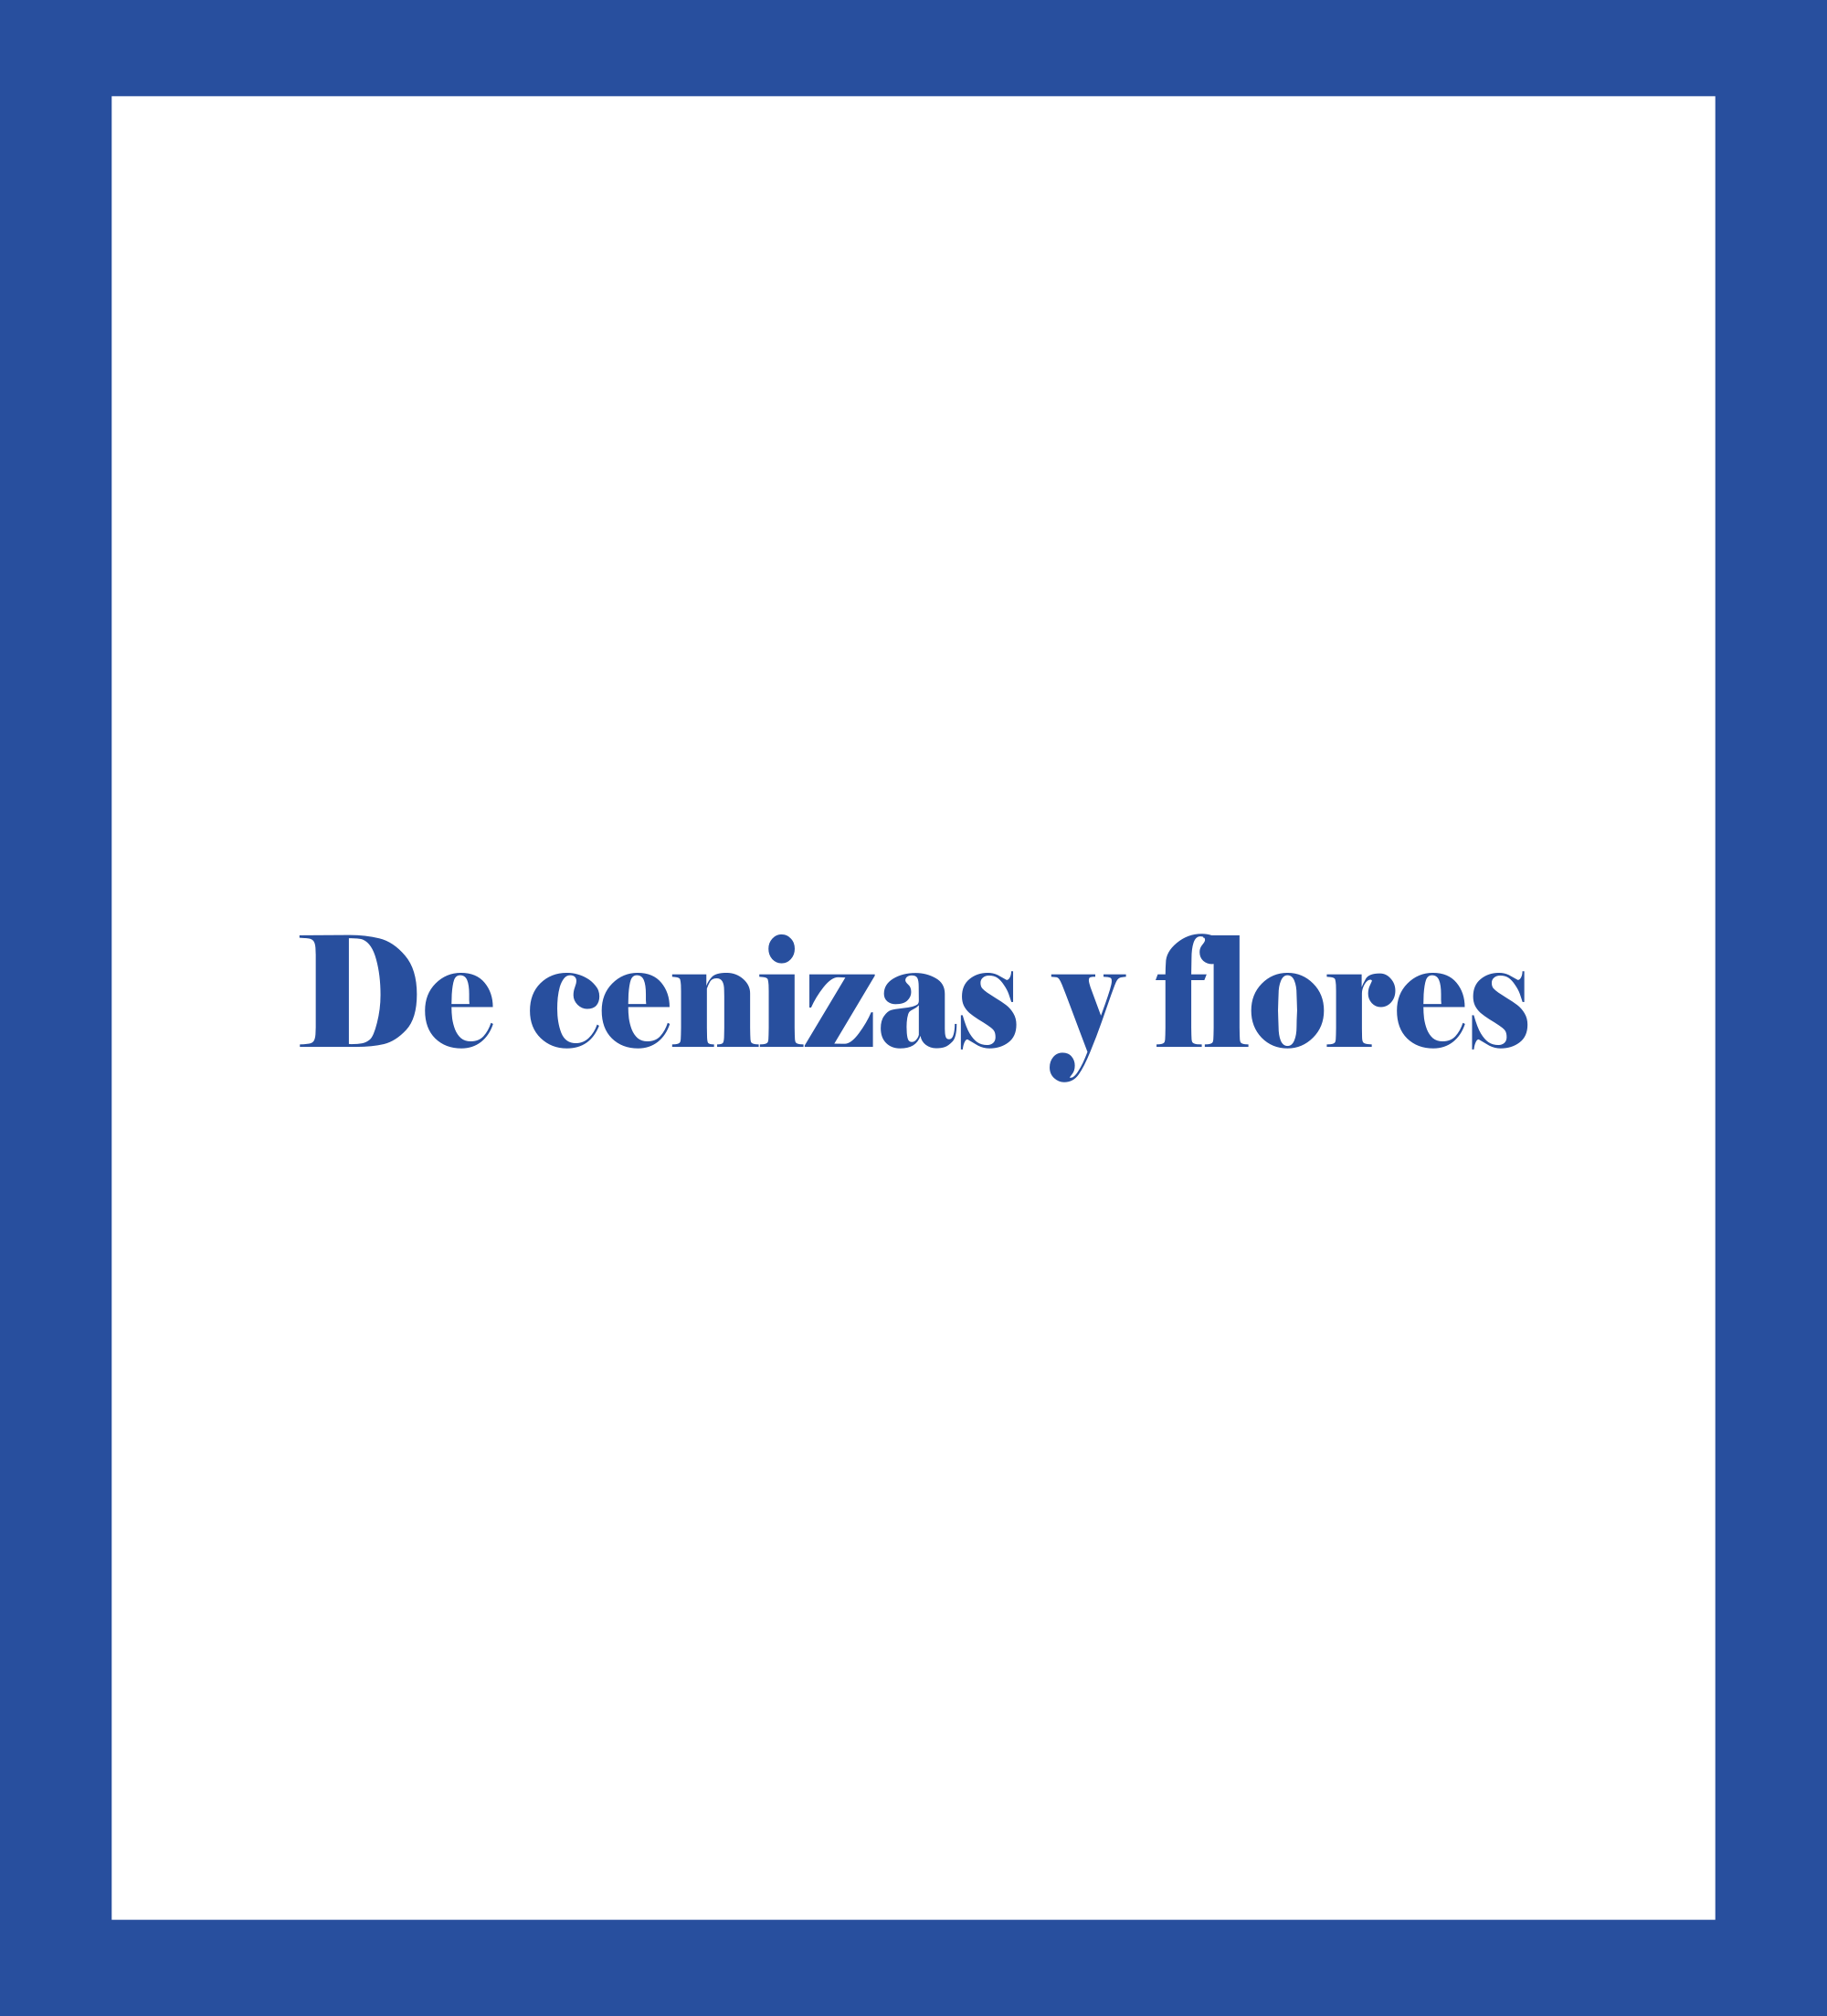 Caratula de De cenizas y flores (De cenizas y flores) 